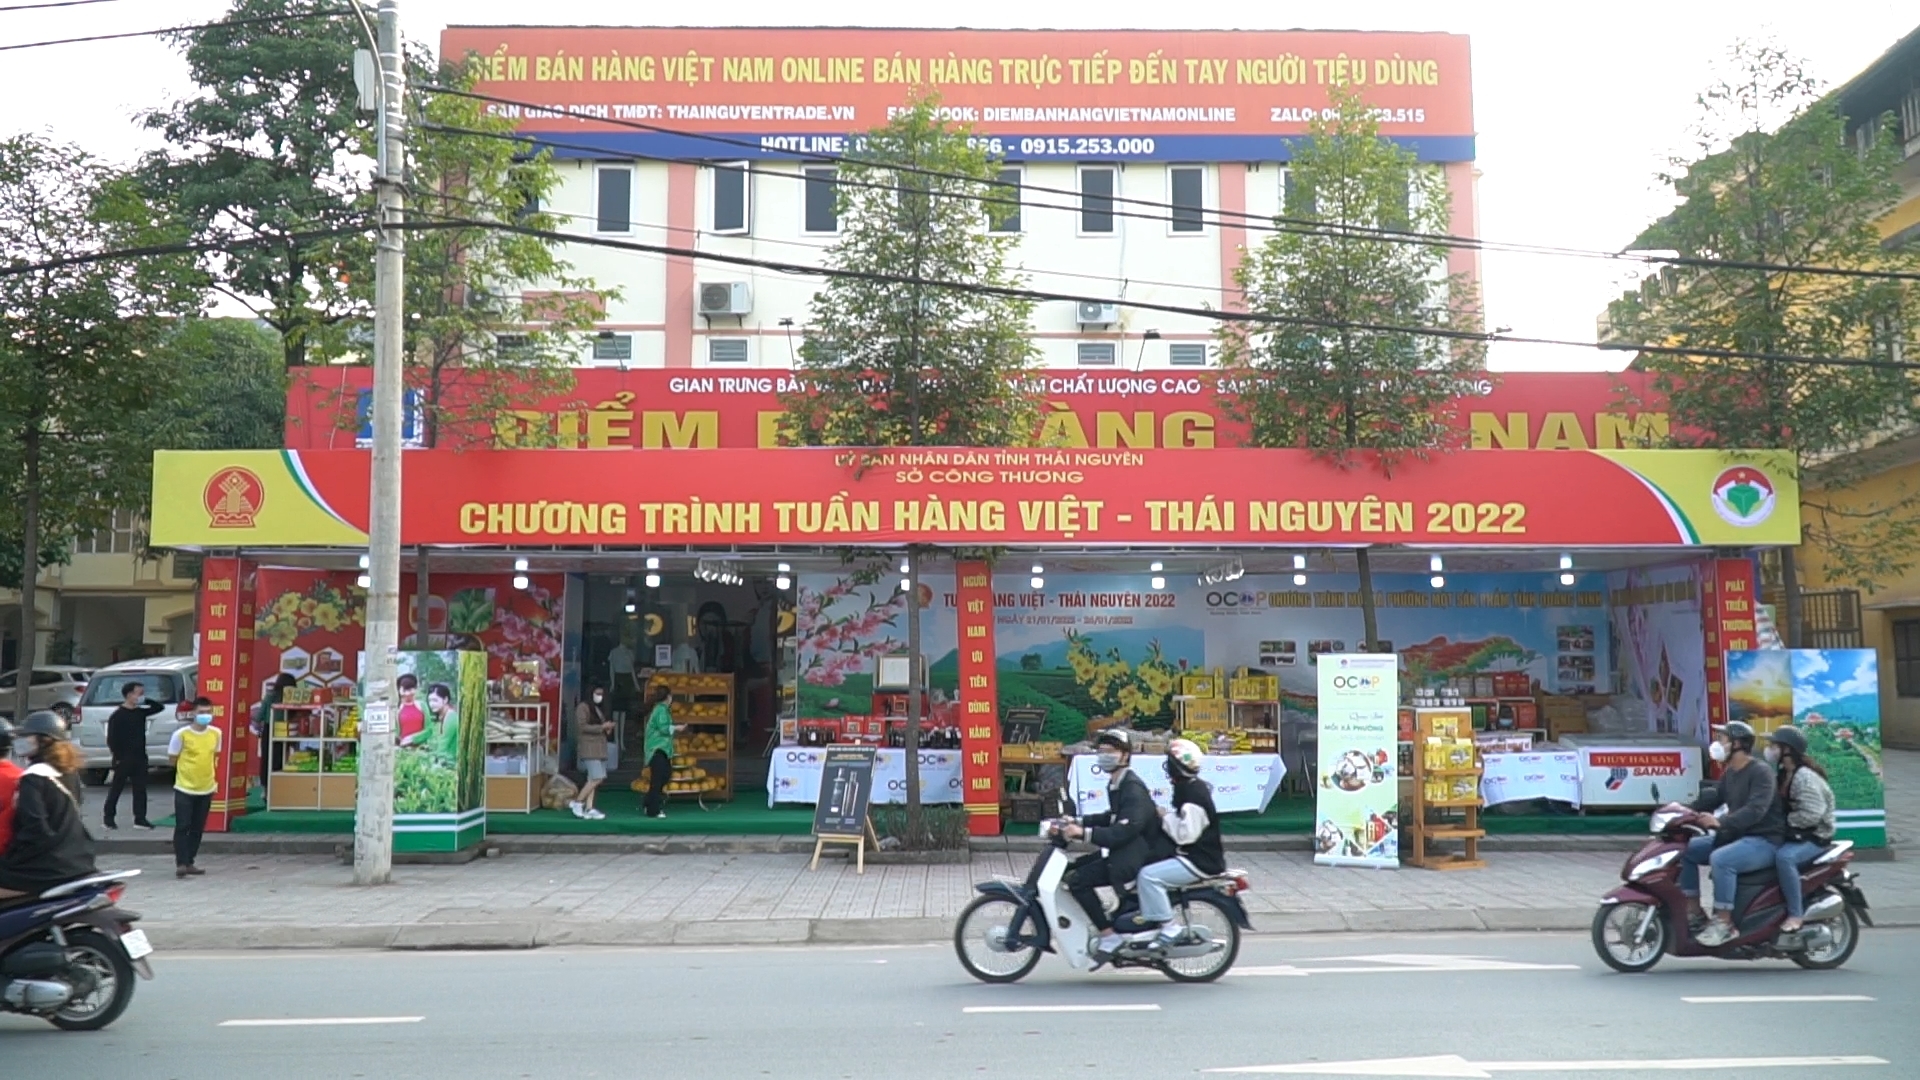 [Photo] Tuần hàng Việt - Thái Nguyên năm 2022